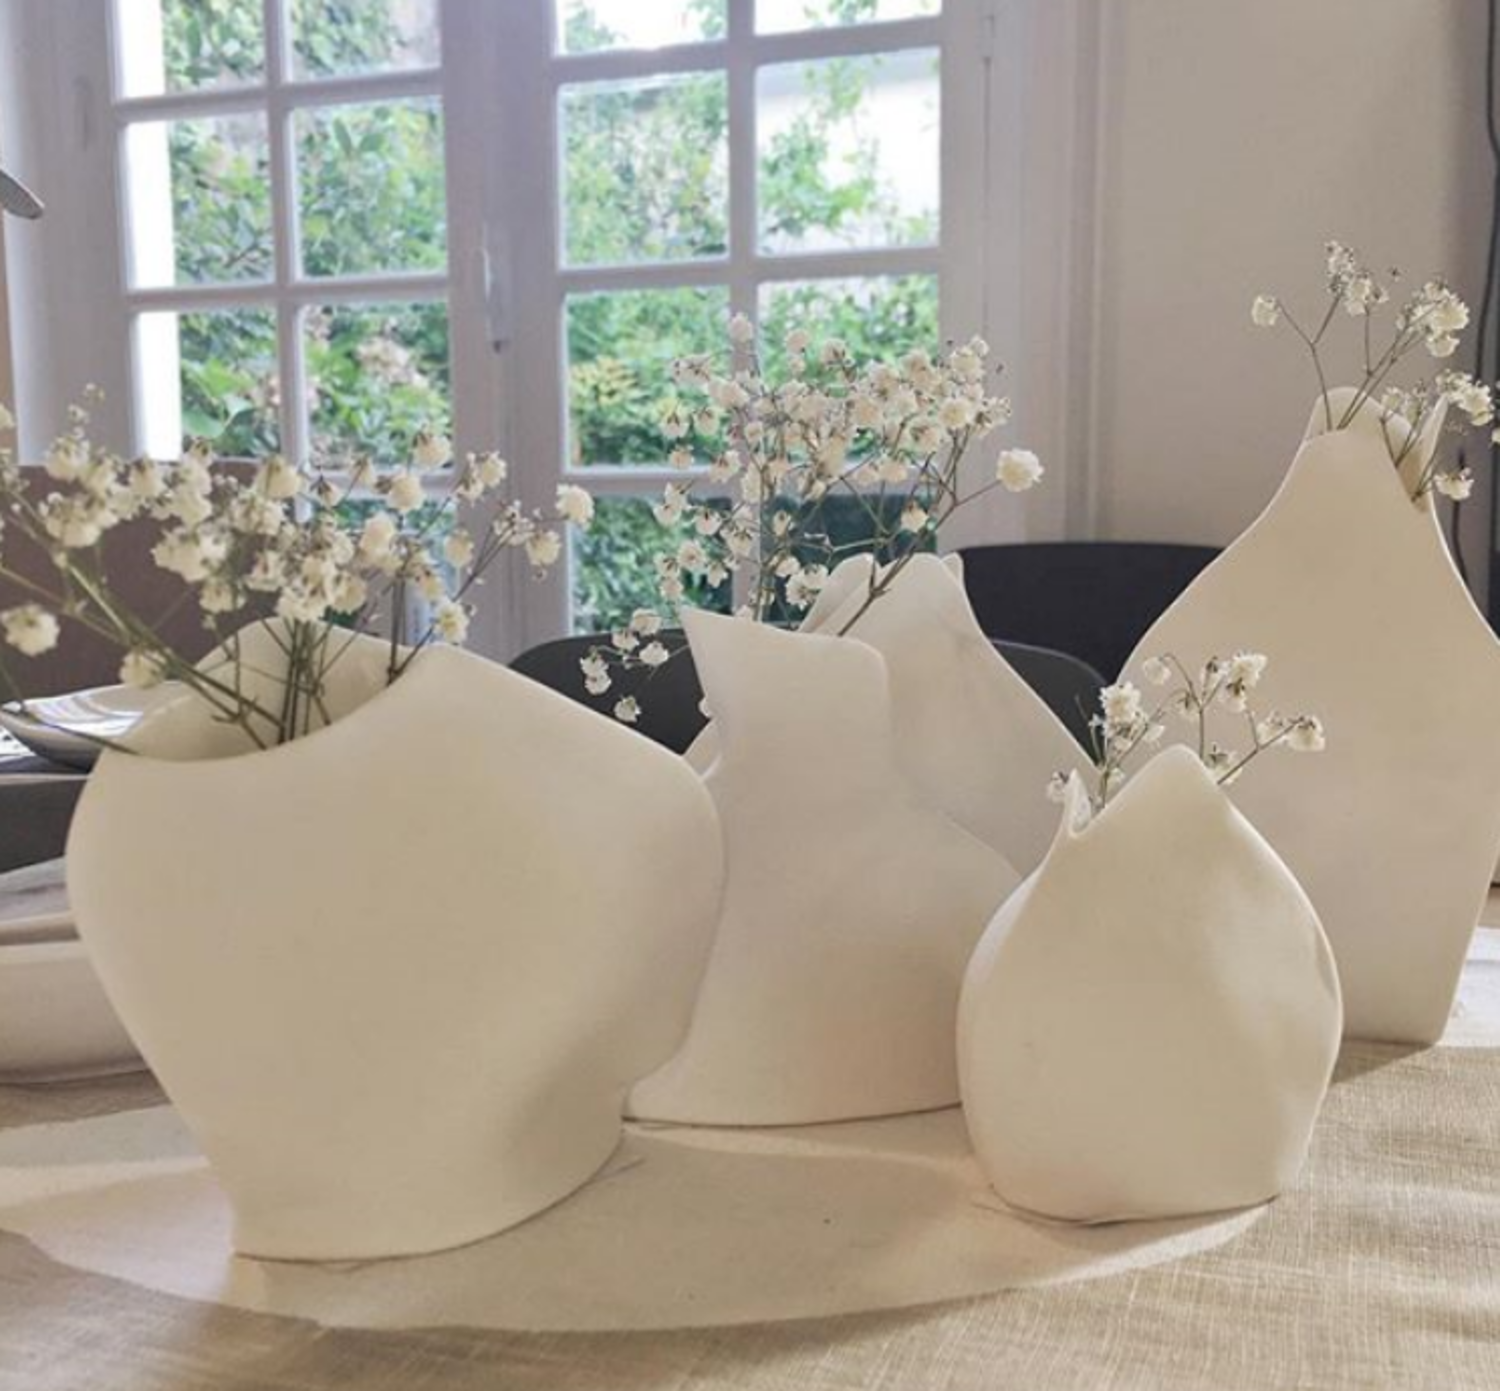 安特卫普Roos van de Velde比利时进口SERAX艺术陶瓷花瓶花器礼物-6